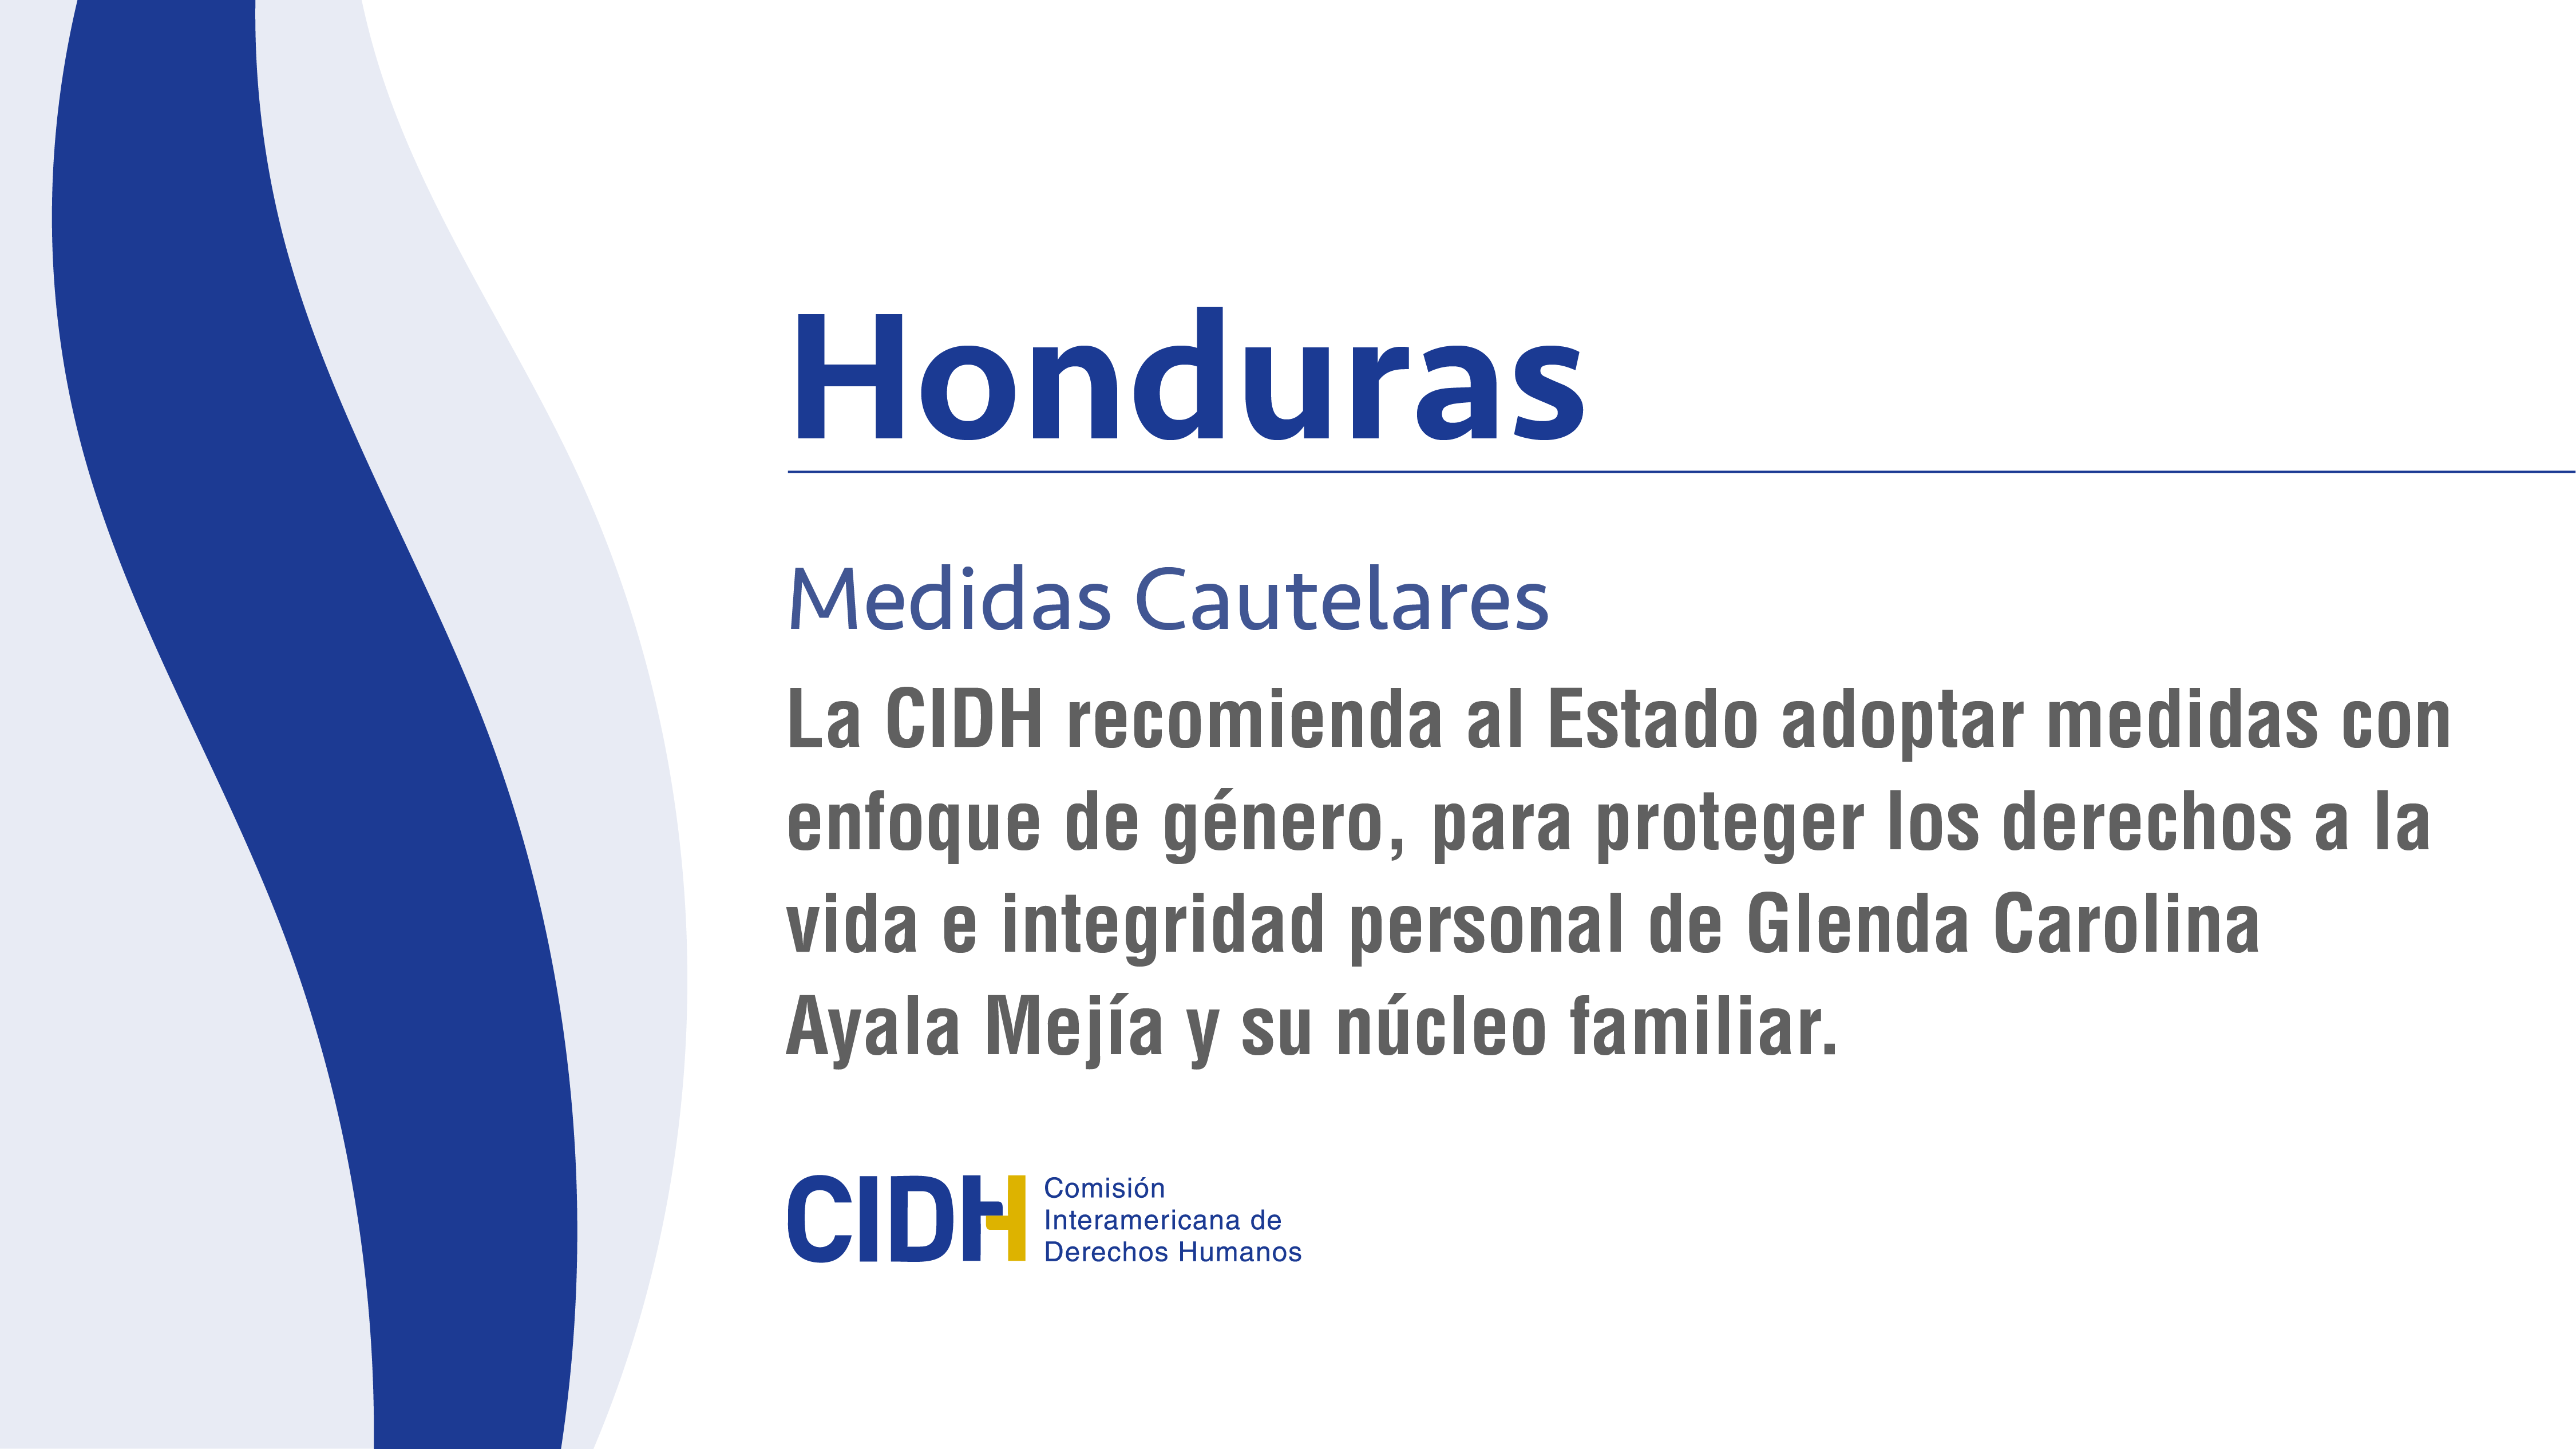 La CIDH recomienda al Estado adoptar medidas con enfoque de género, para proteger los derechos a la vida e integridad personal de Glenda Carolina Ayala Mejía y su núcleo familiar.